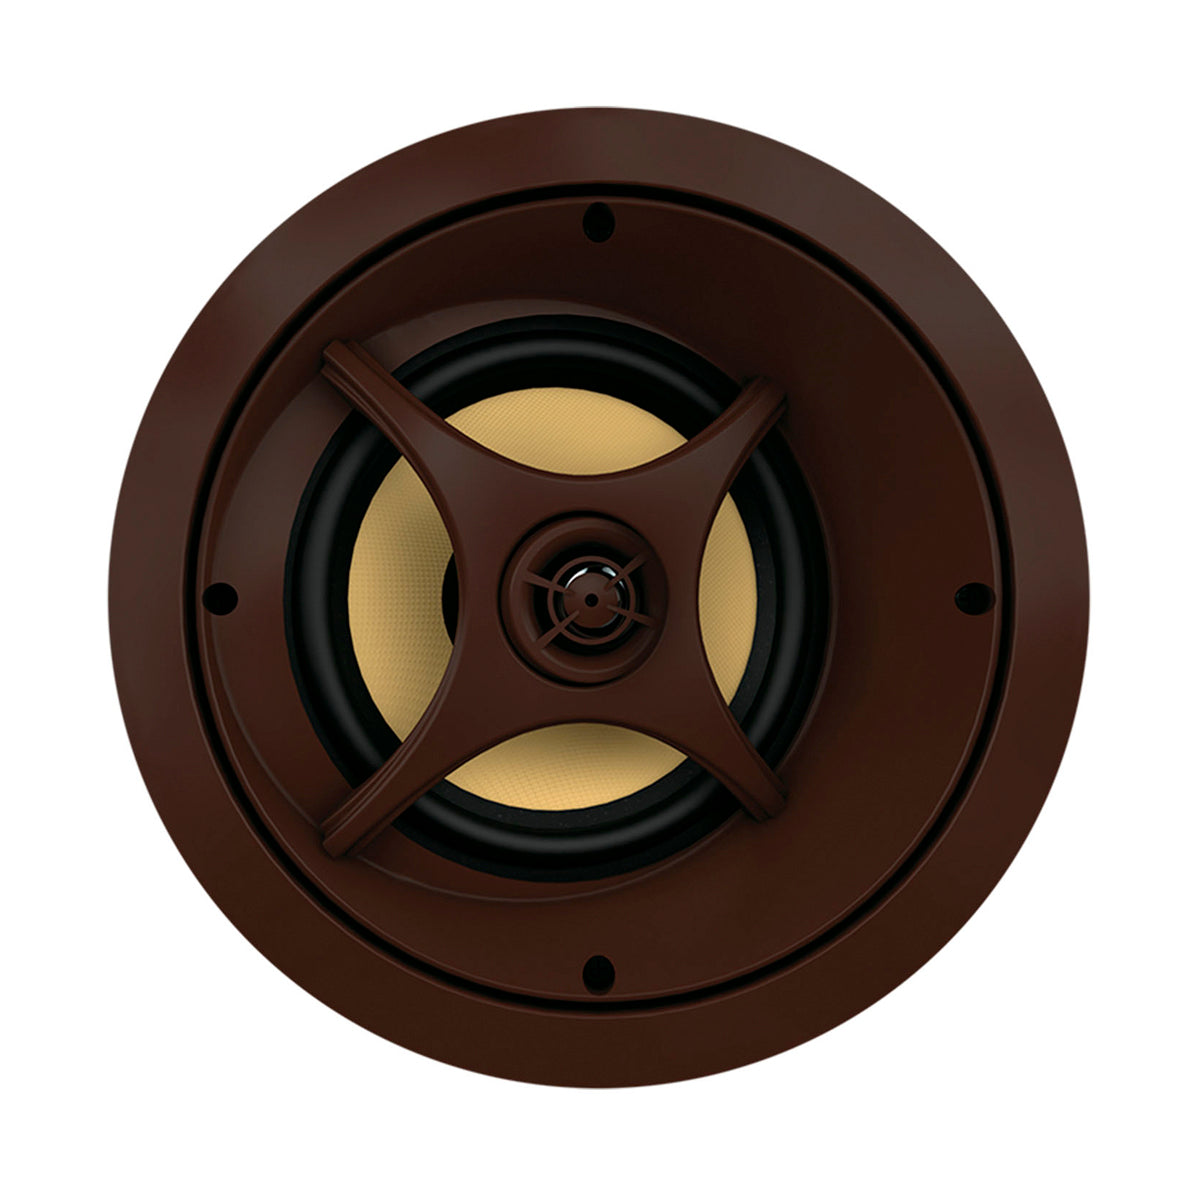 Proficient Audio Signature Series C675s 6.5" LCR Inceiling Speaker- piece